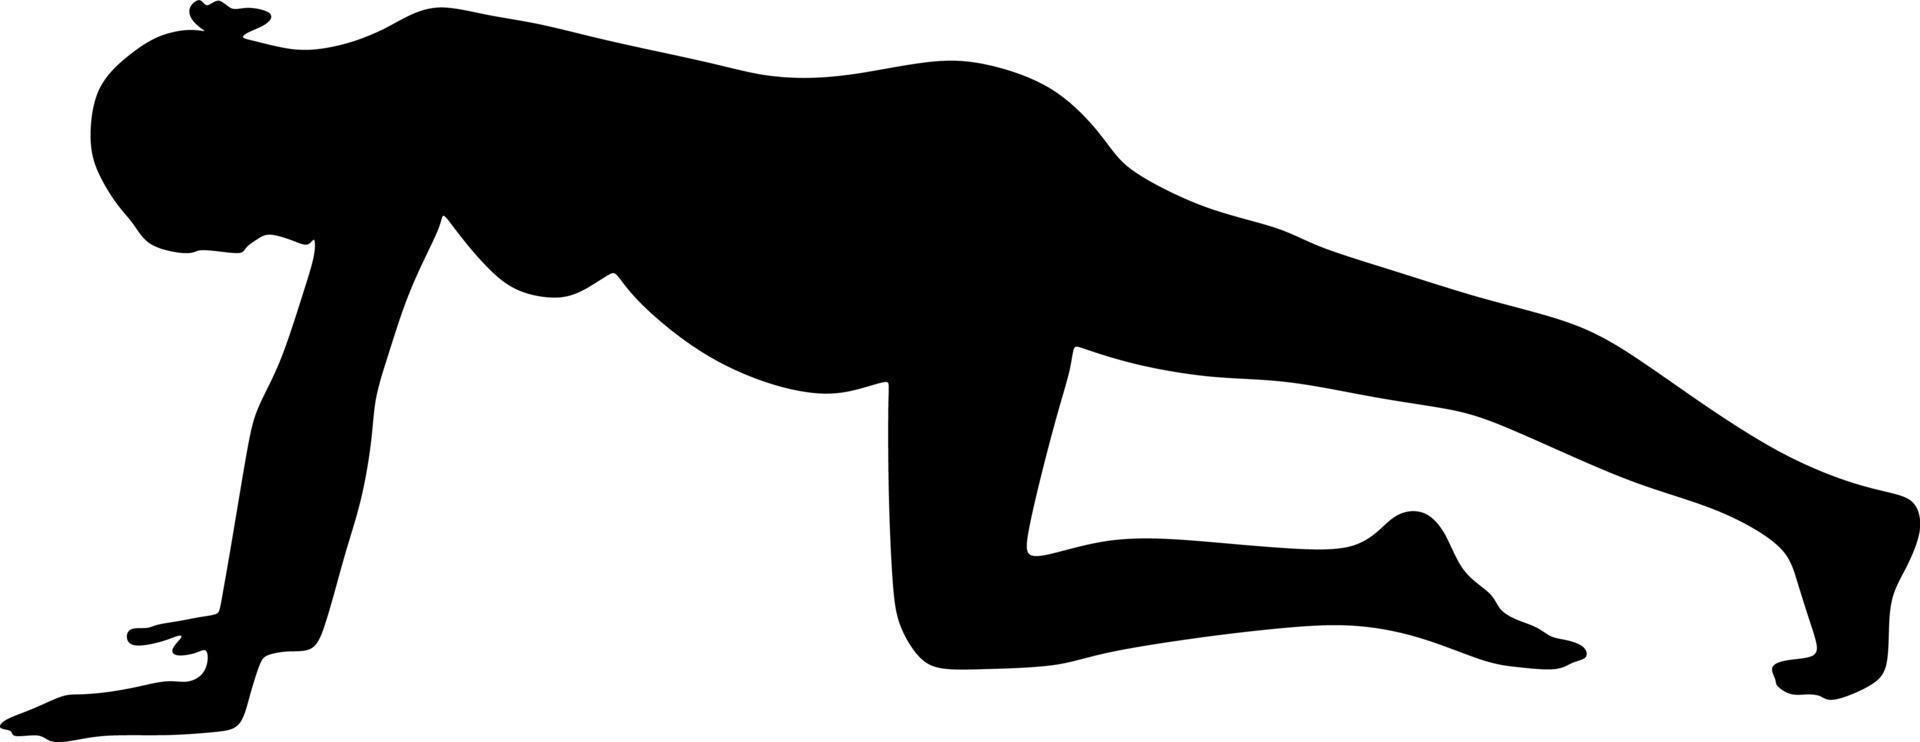 El arte de la silueta de las posturas de yoga es una cápsula de gimnasia de pilates prenatal para mujeres embarazadas, ilustración vectorial vector